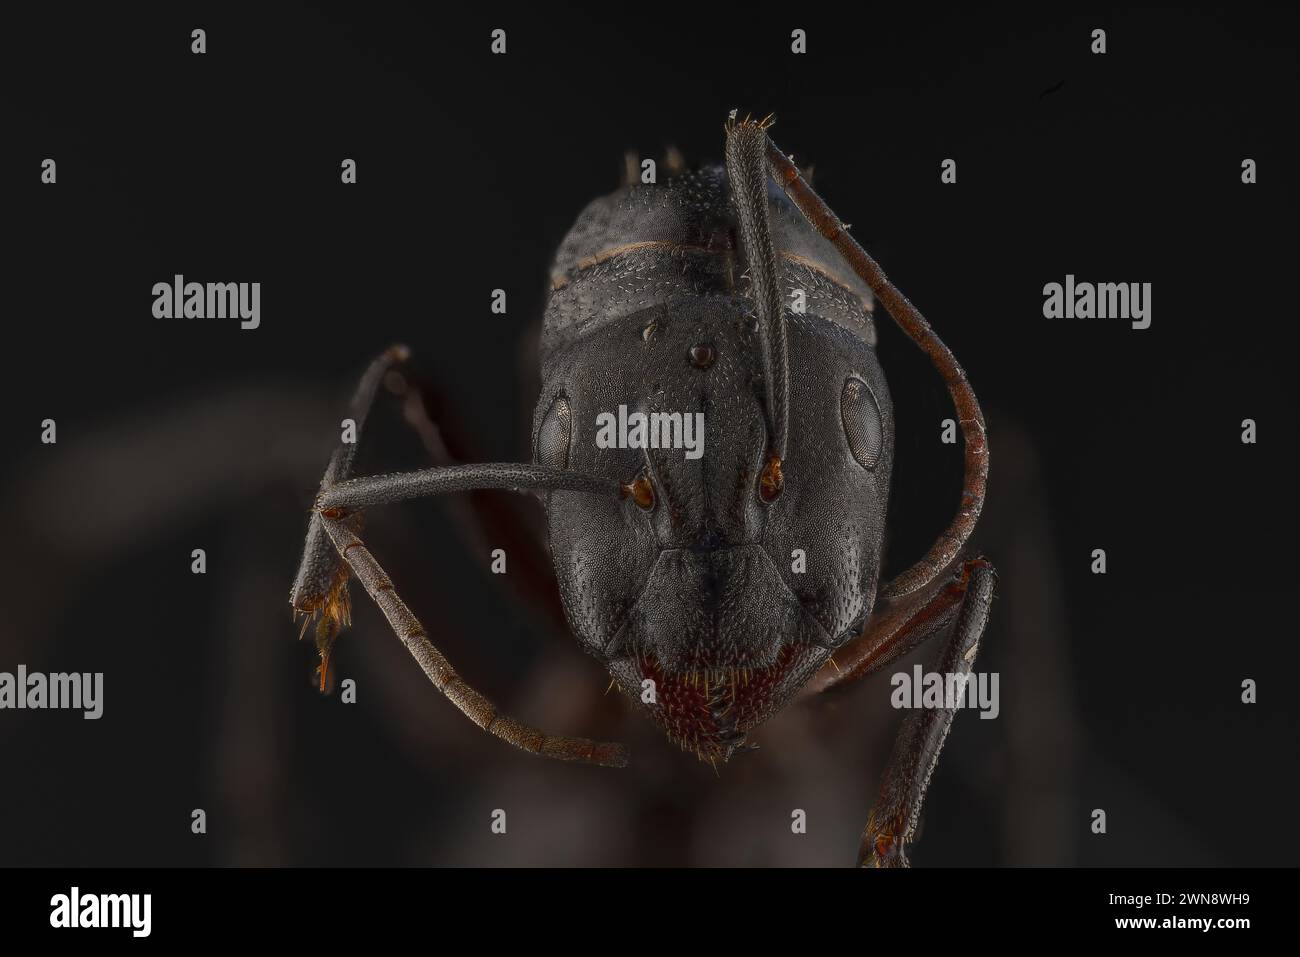 Les fourmis semblent avoir un peu de personnalité quand leurs visages sont ce gros plan WORCESTER PARK, ANGLETERRE ILS ressemblent à des photos d'IA mais ces fascinantes min Banque D'Images